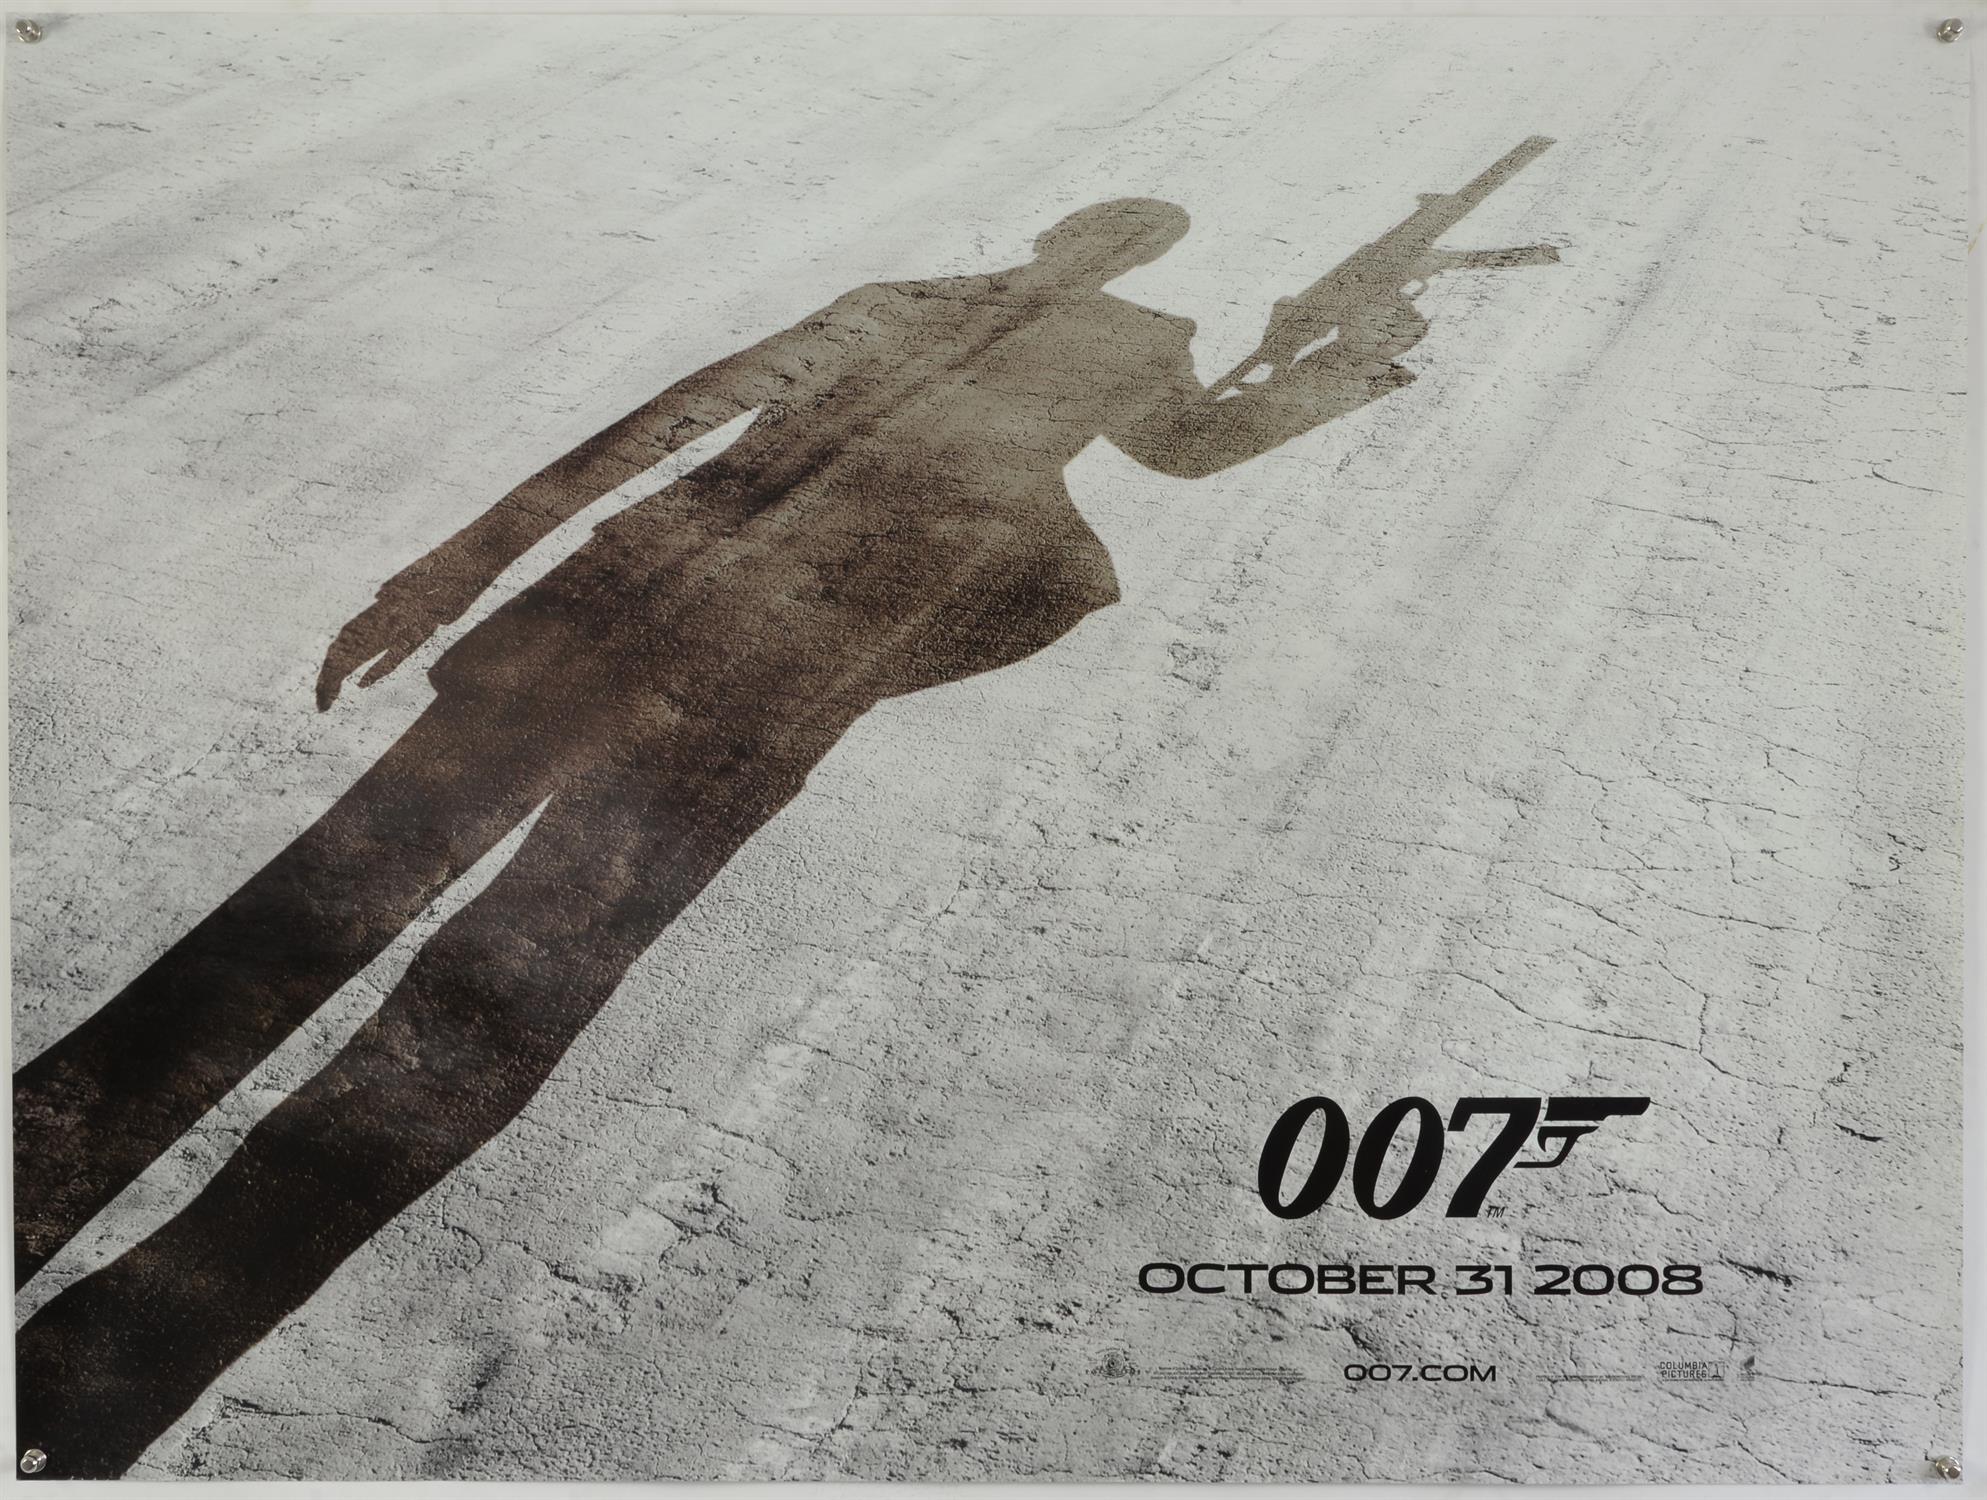 James Bond Quantum Of Solace (2008) Three British Quad film posters for the Daniel Craig James Bond - Image 2 of 2